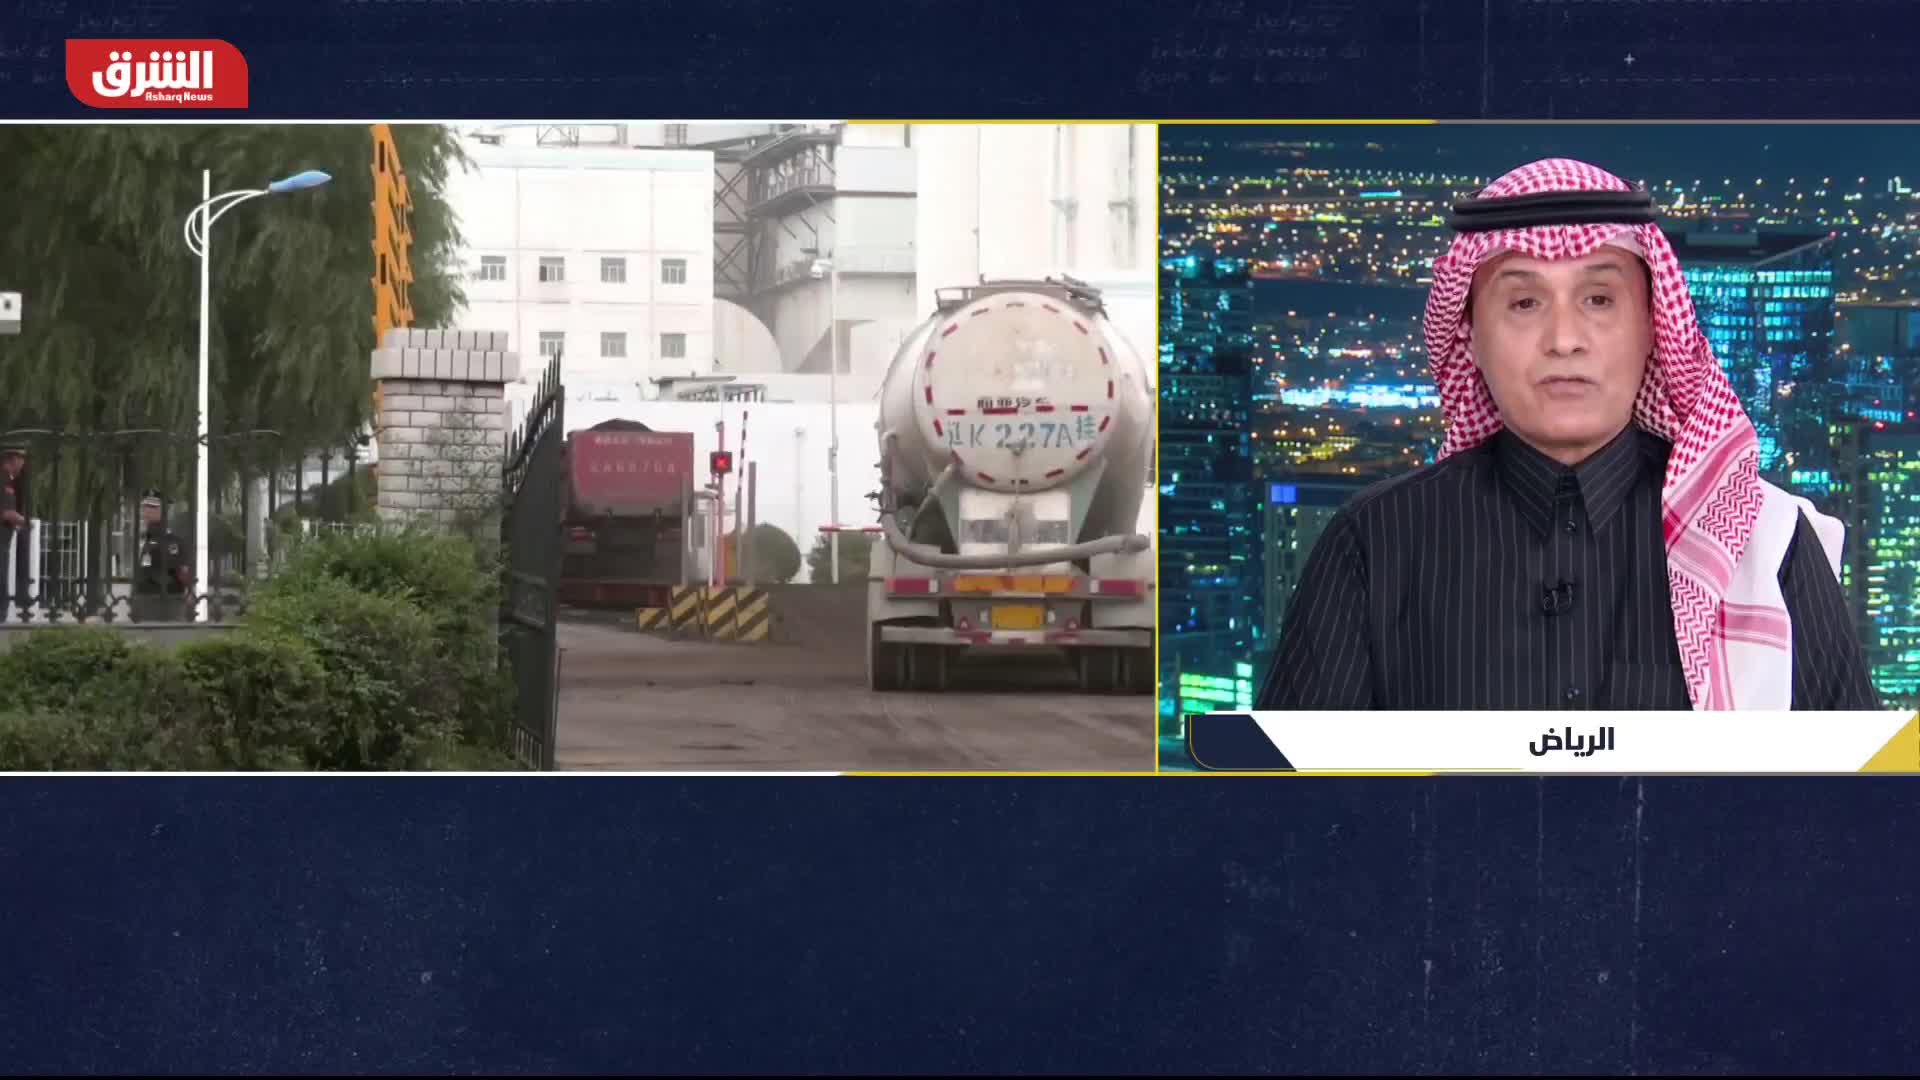 د. فهد بن جمعة: العراق يتقدم نحو الاستقرار وهذا يُغضب إيران ويزعجها